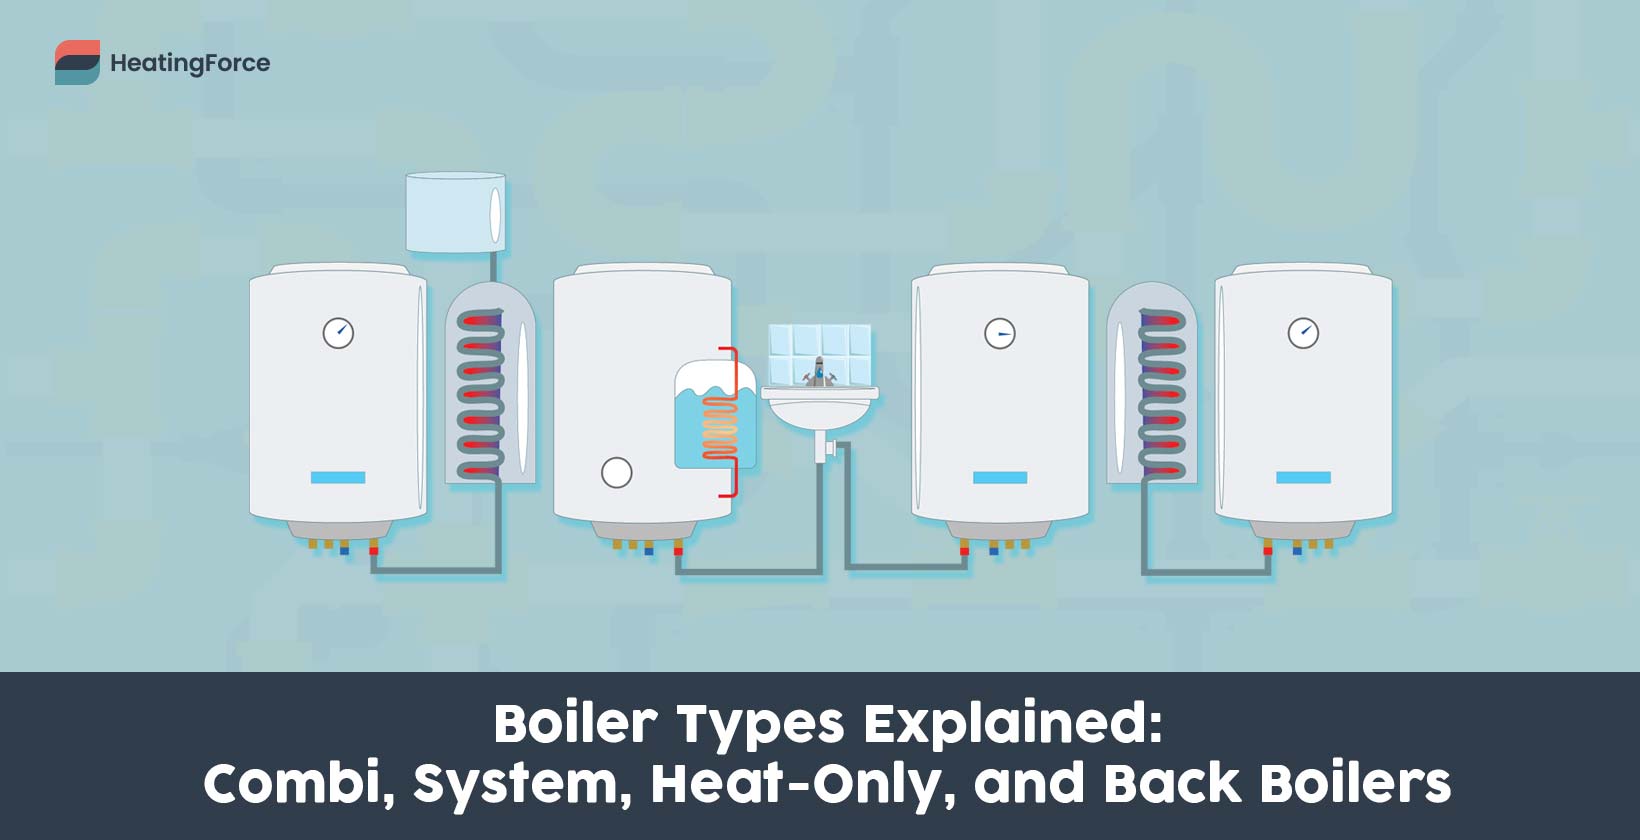 Boiler types